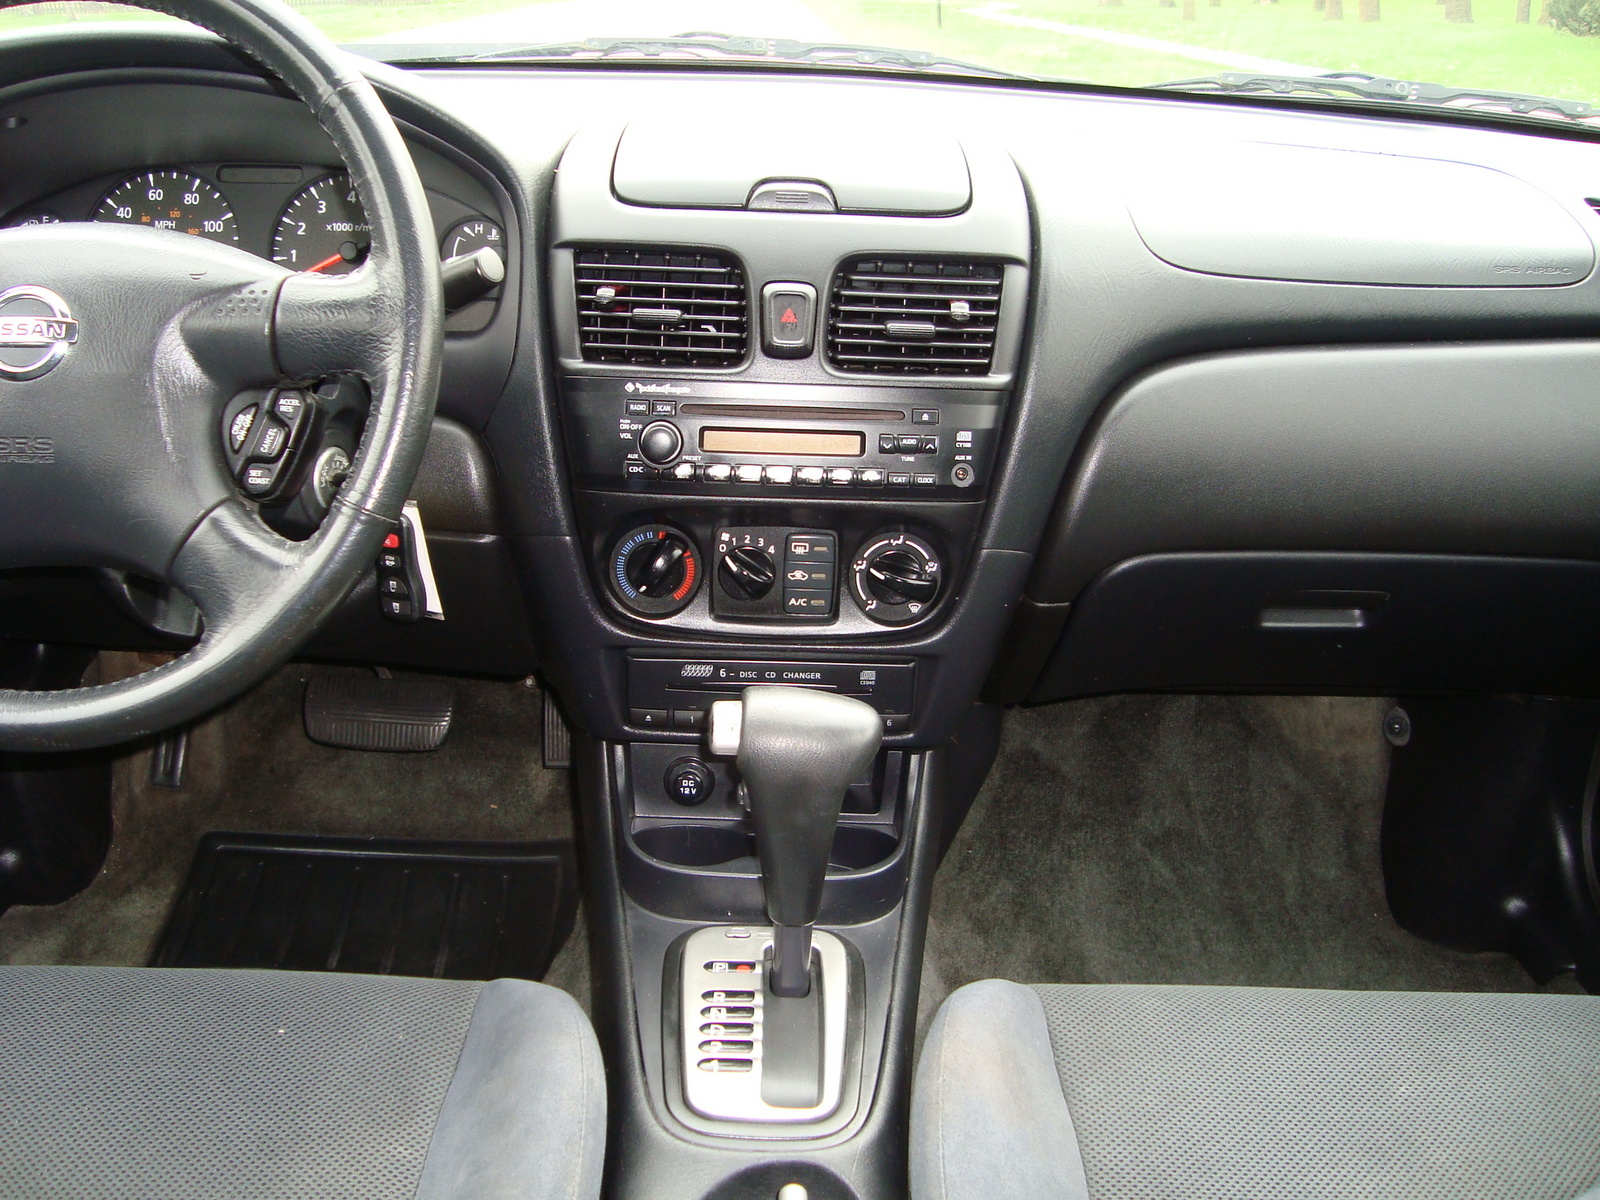 2005 Nissan sentra interior photos #2